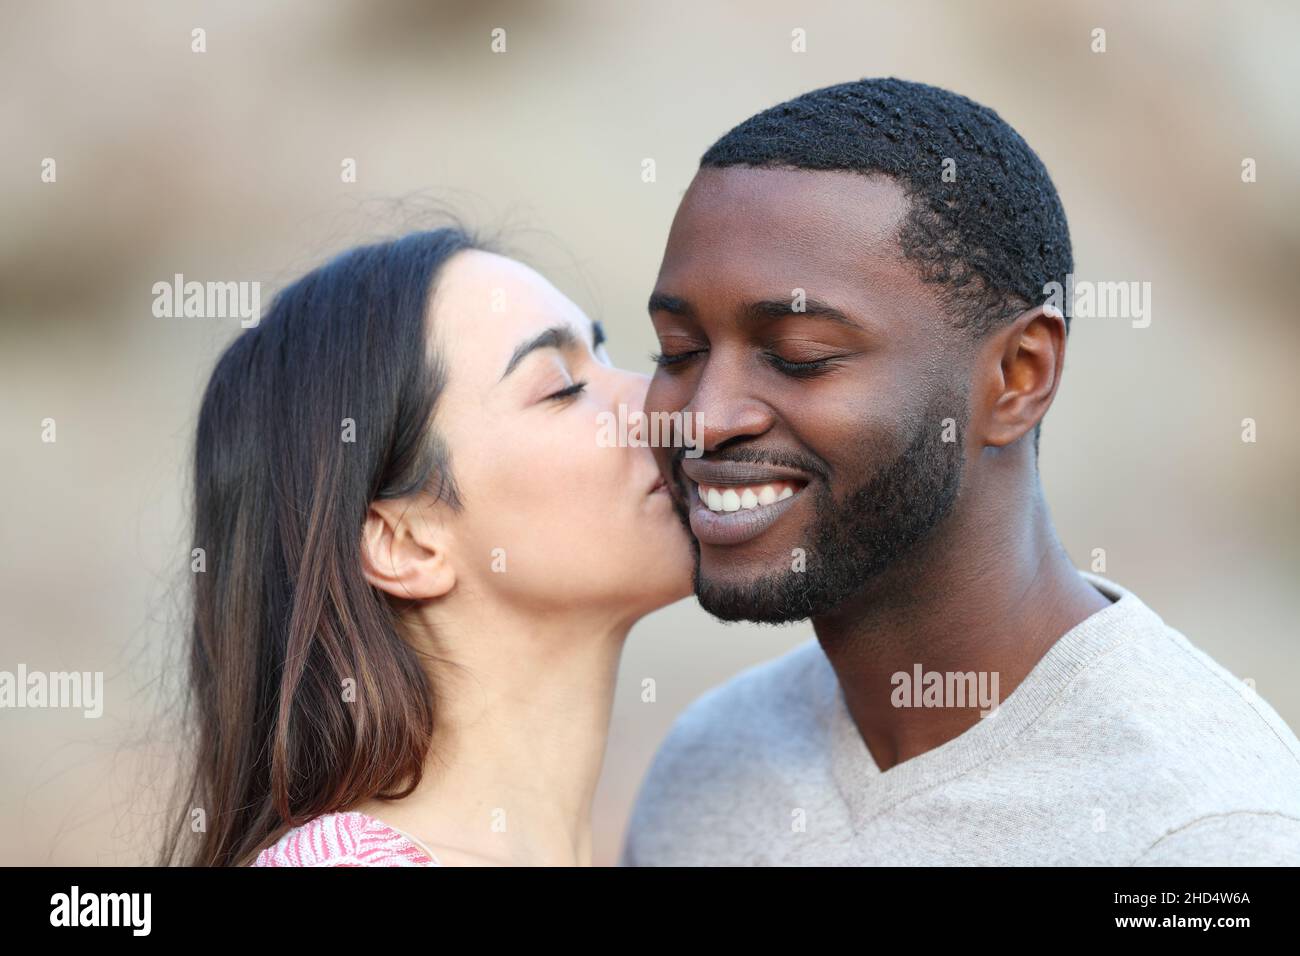 Felice donna caucasica baciare sulla guancia un uomo con la pelle nera Foto Stock